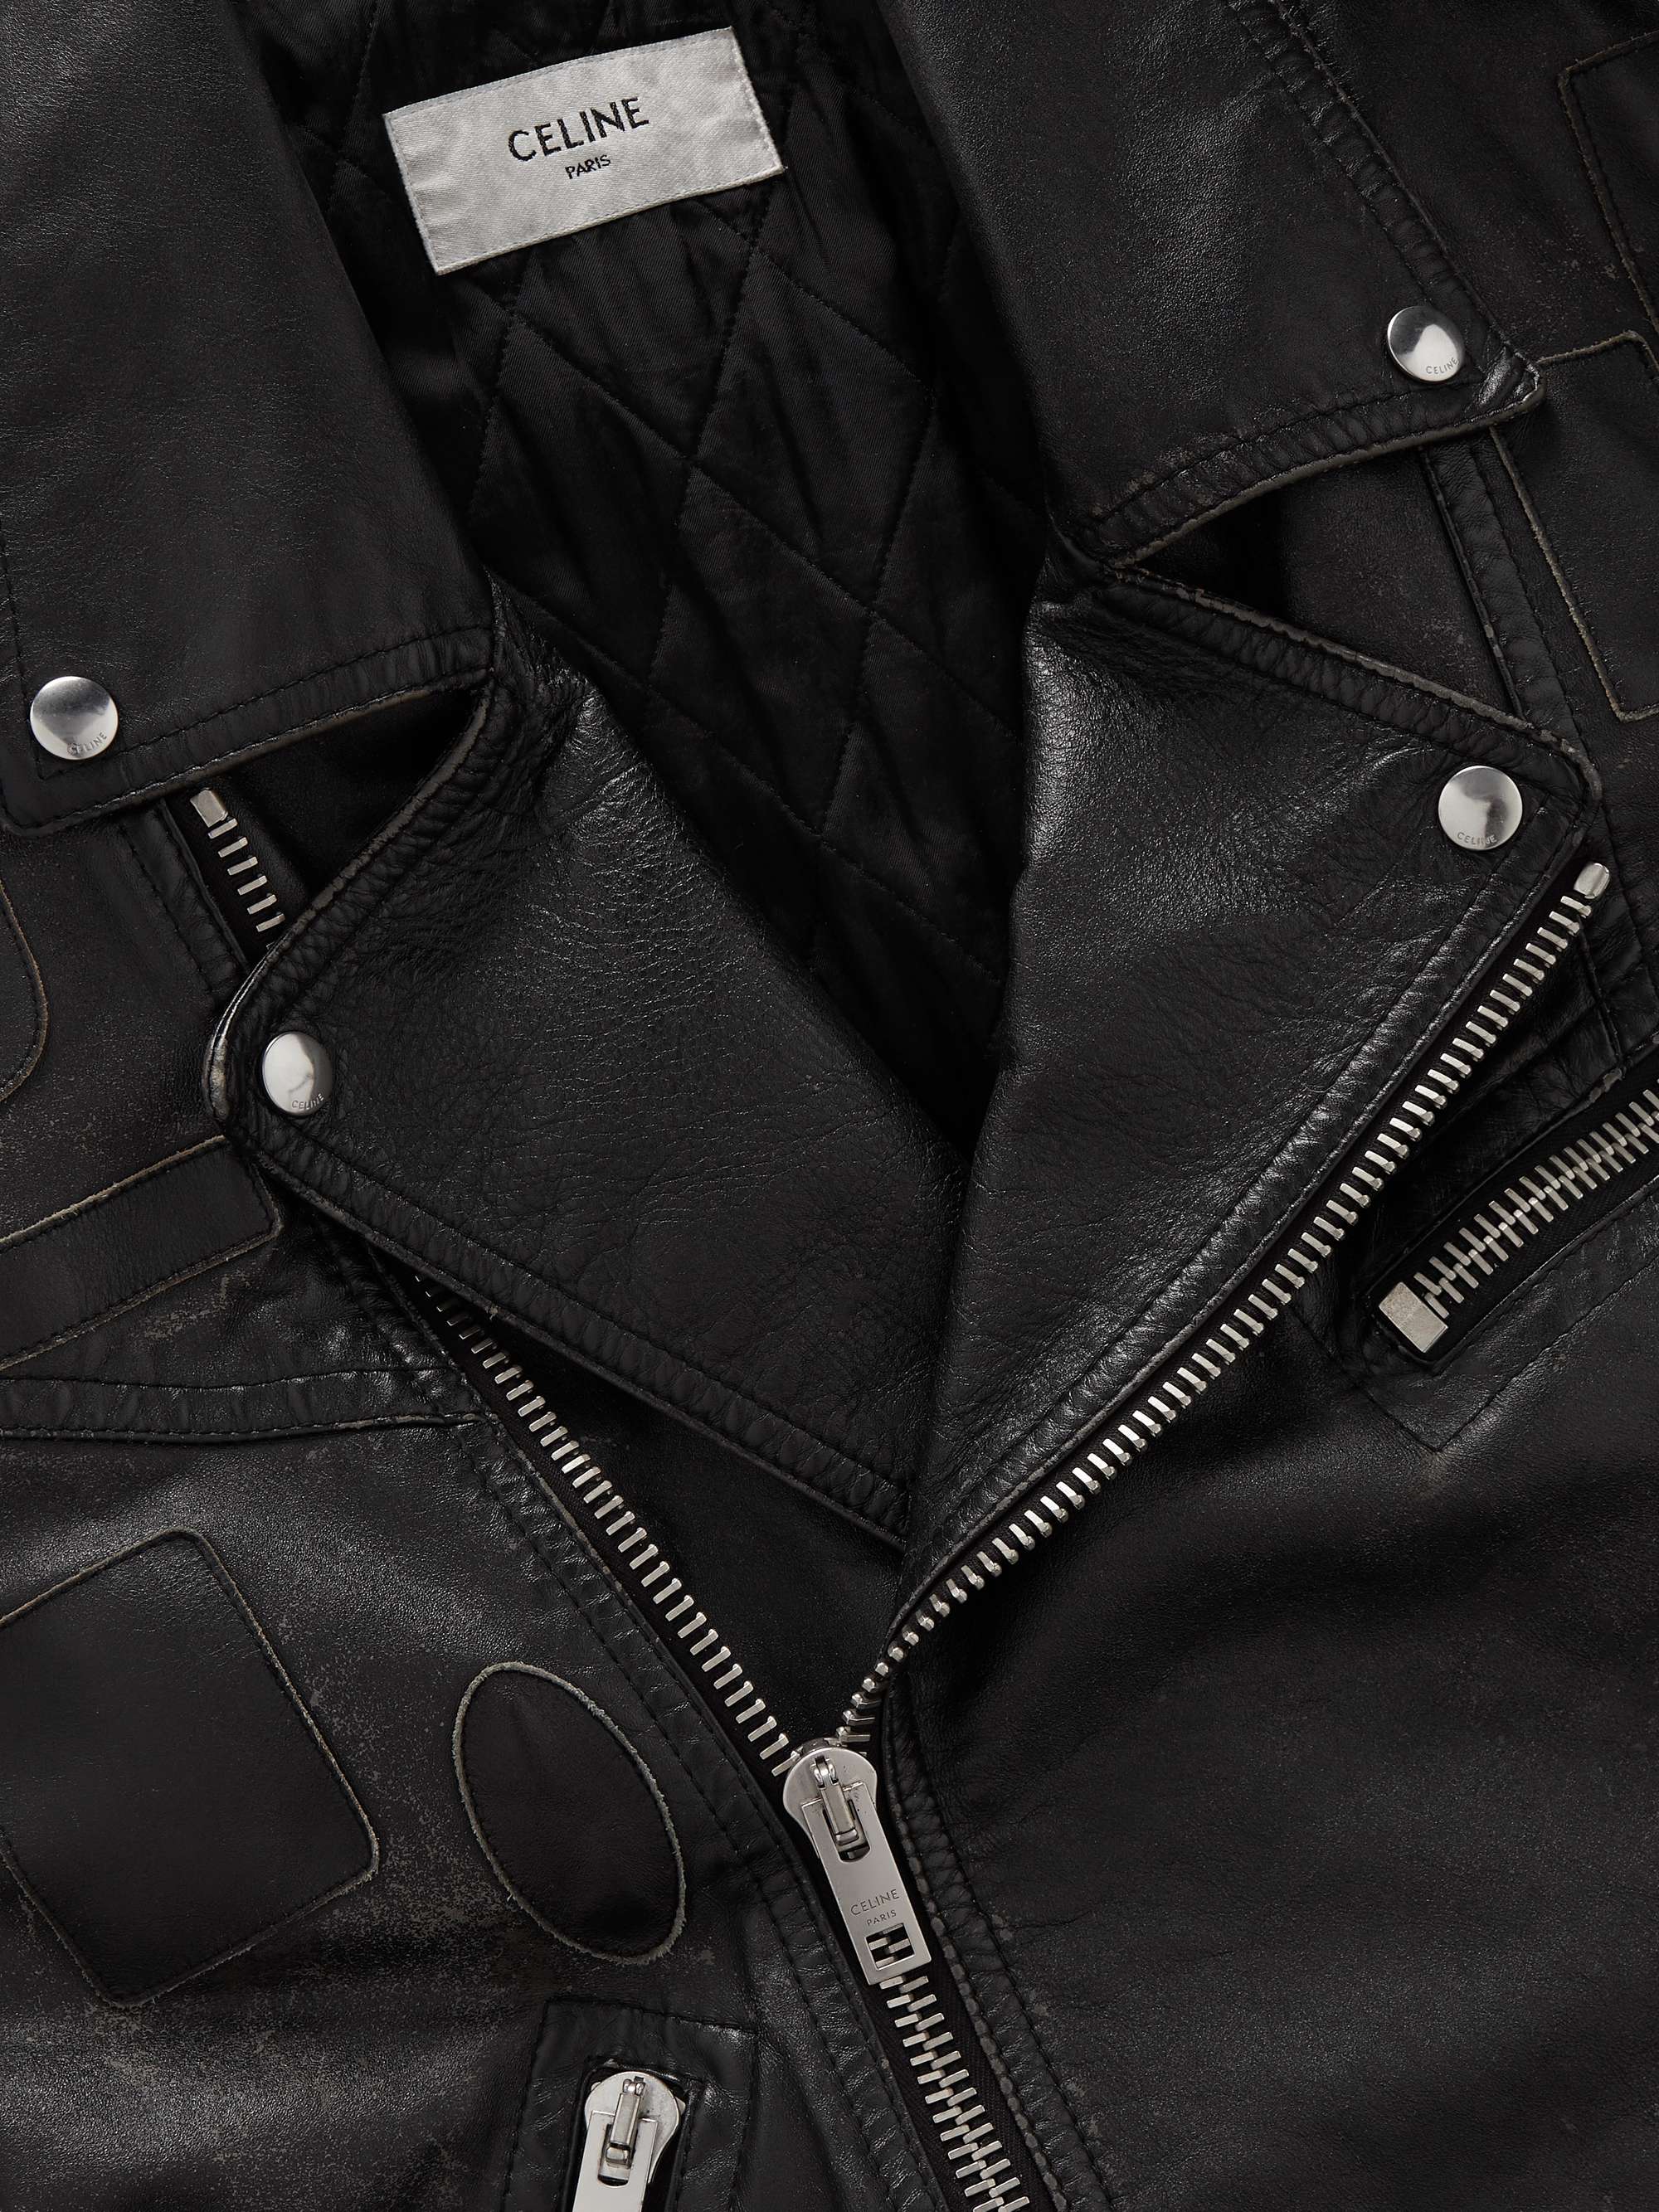 CELINE HOMME Appliquéd Leather Biker Jacket